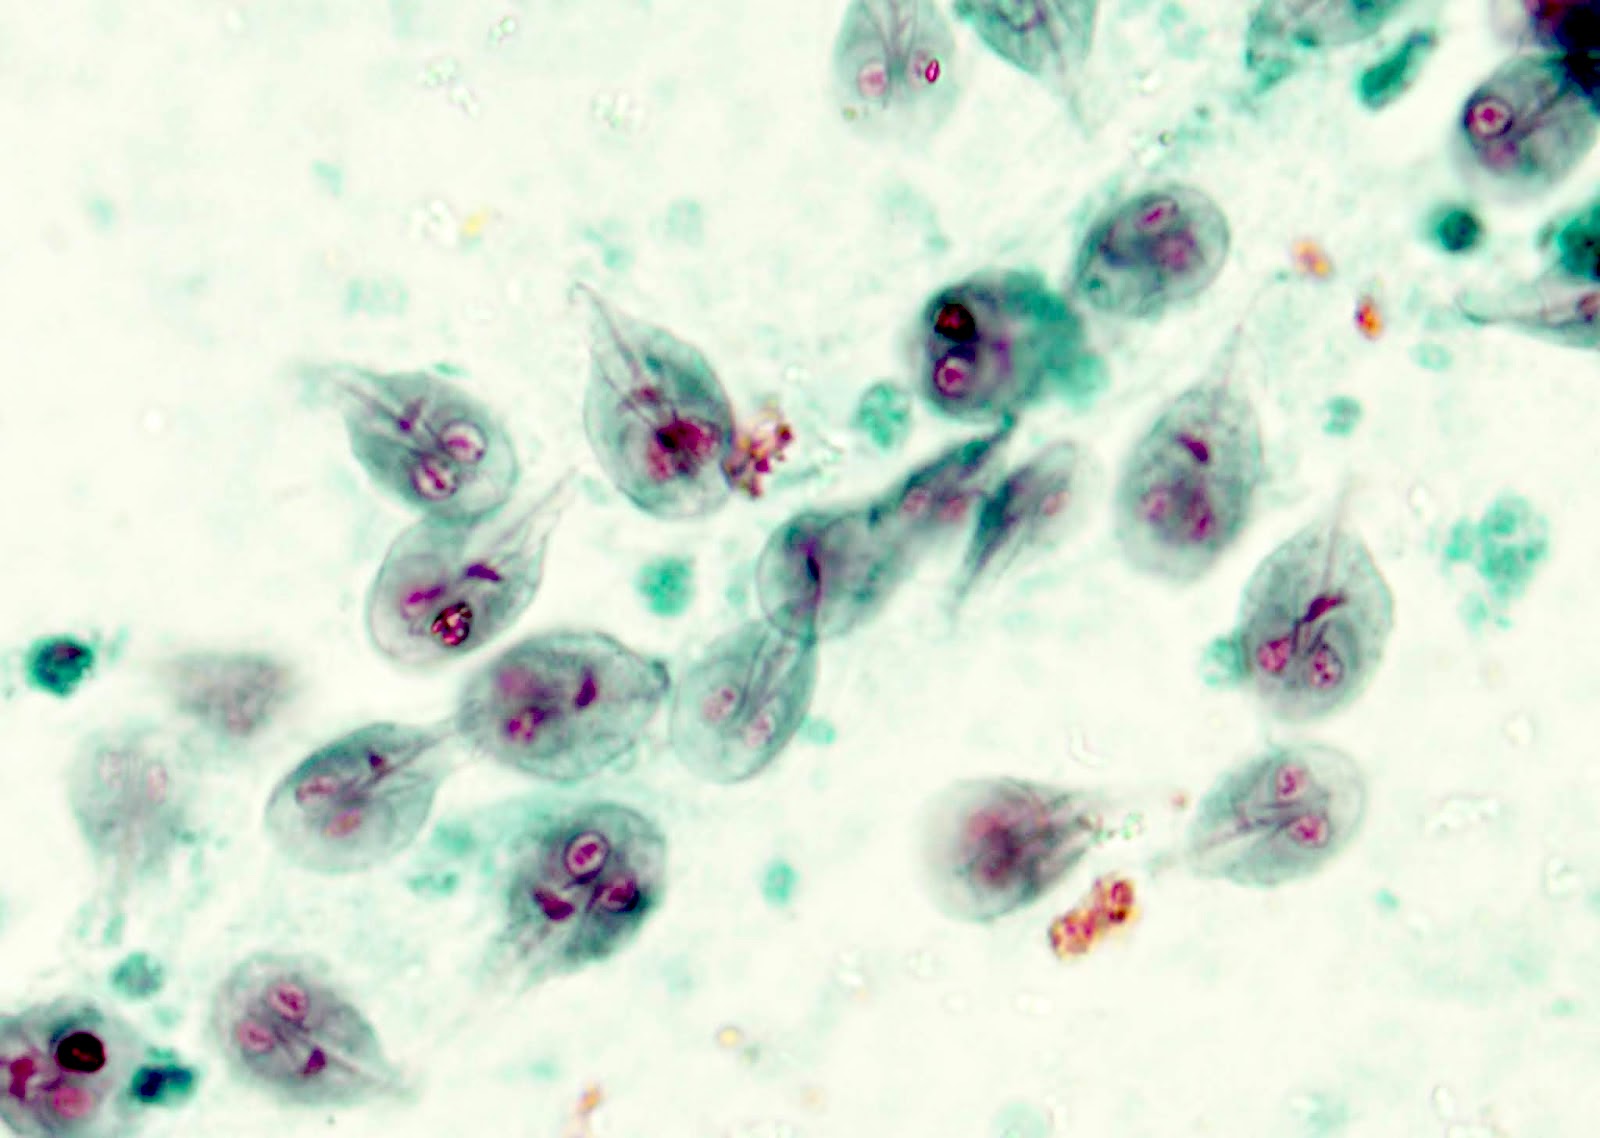 giardiasis duodenum pathology outlines